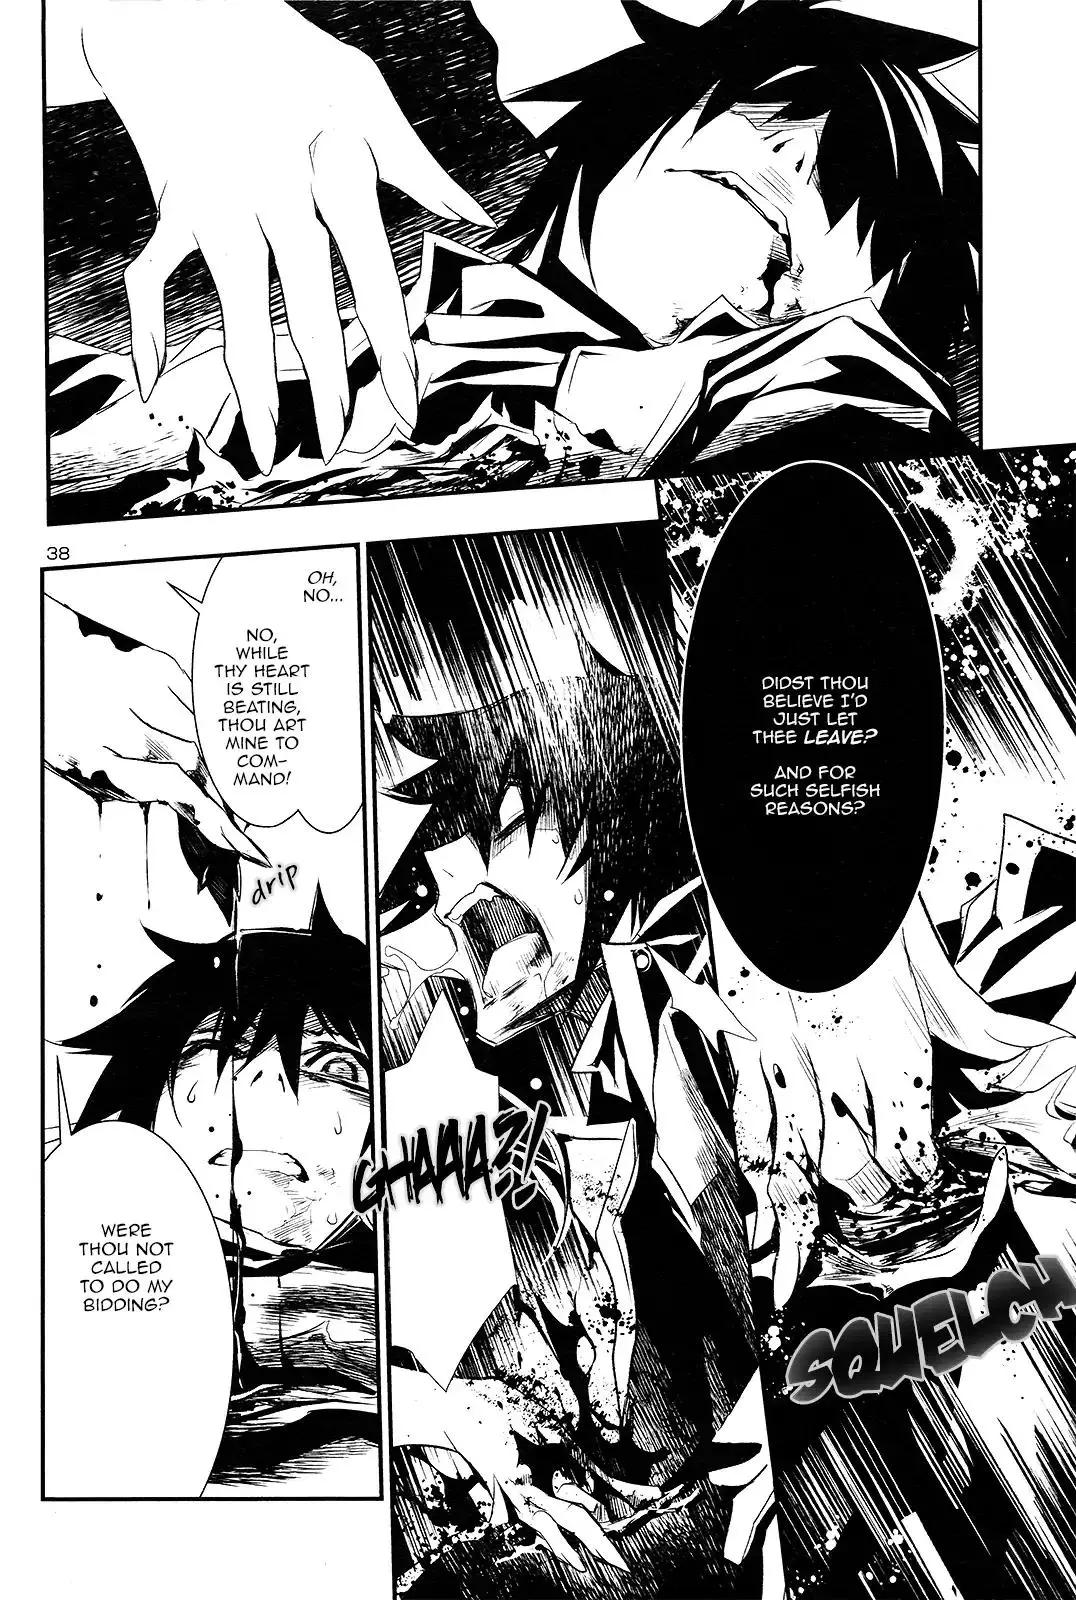 Shinju no Nectar - 1 page 38